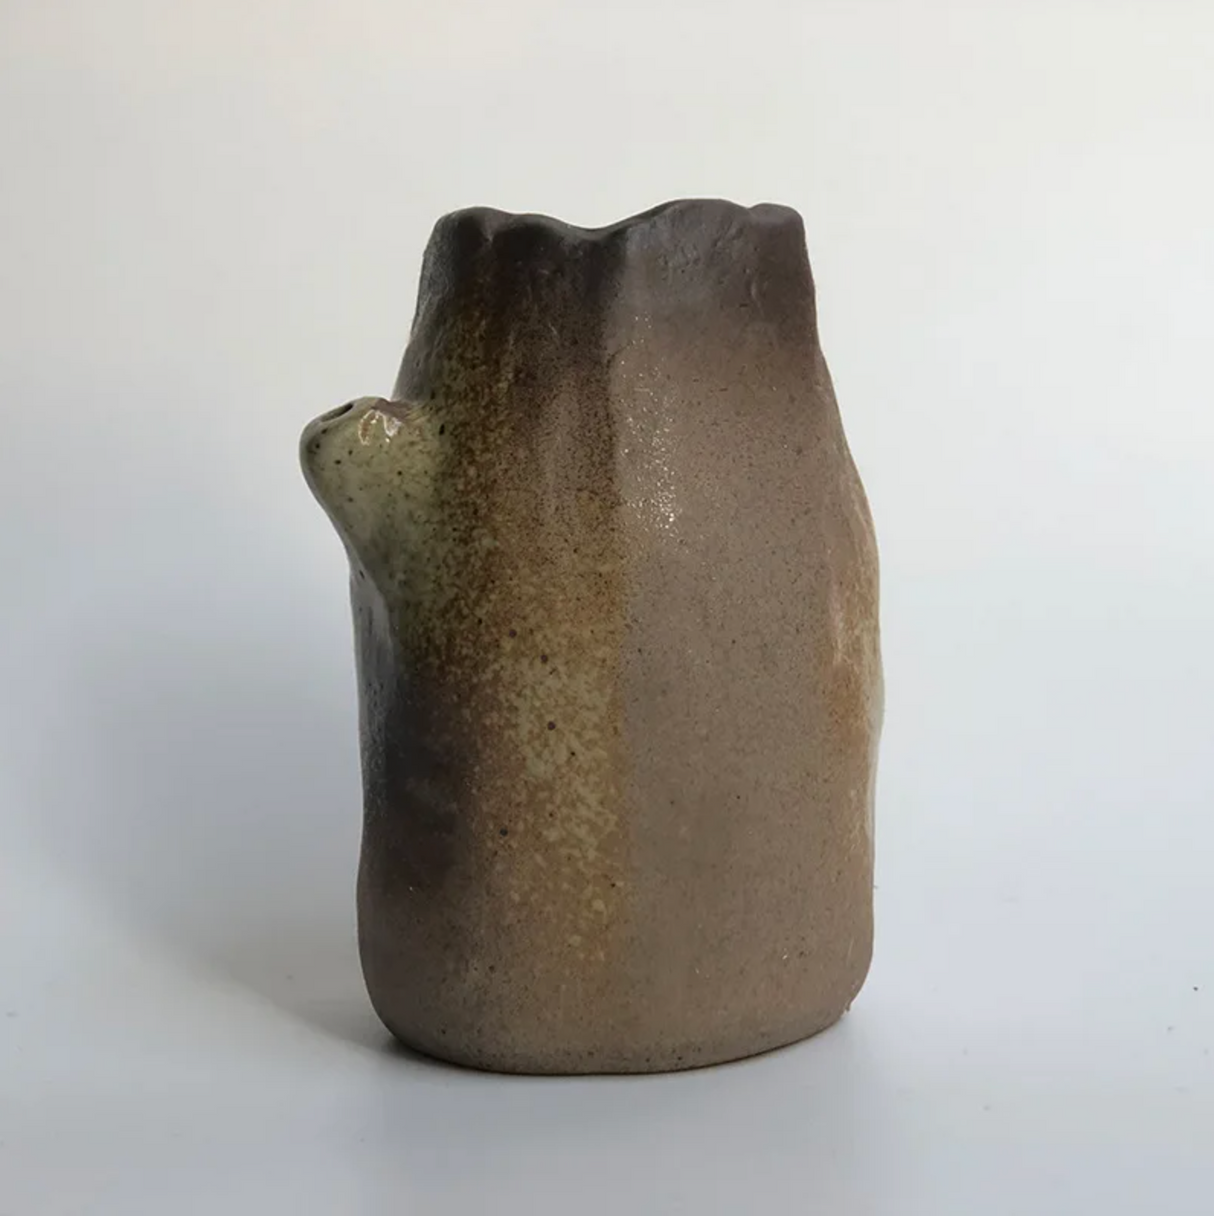 Vase japonais en céramique style ancien